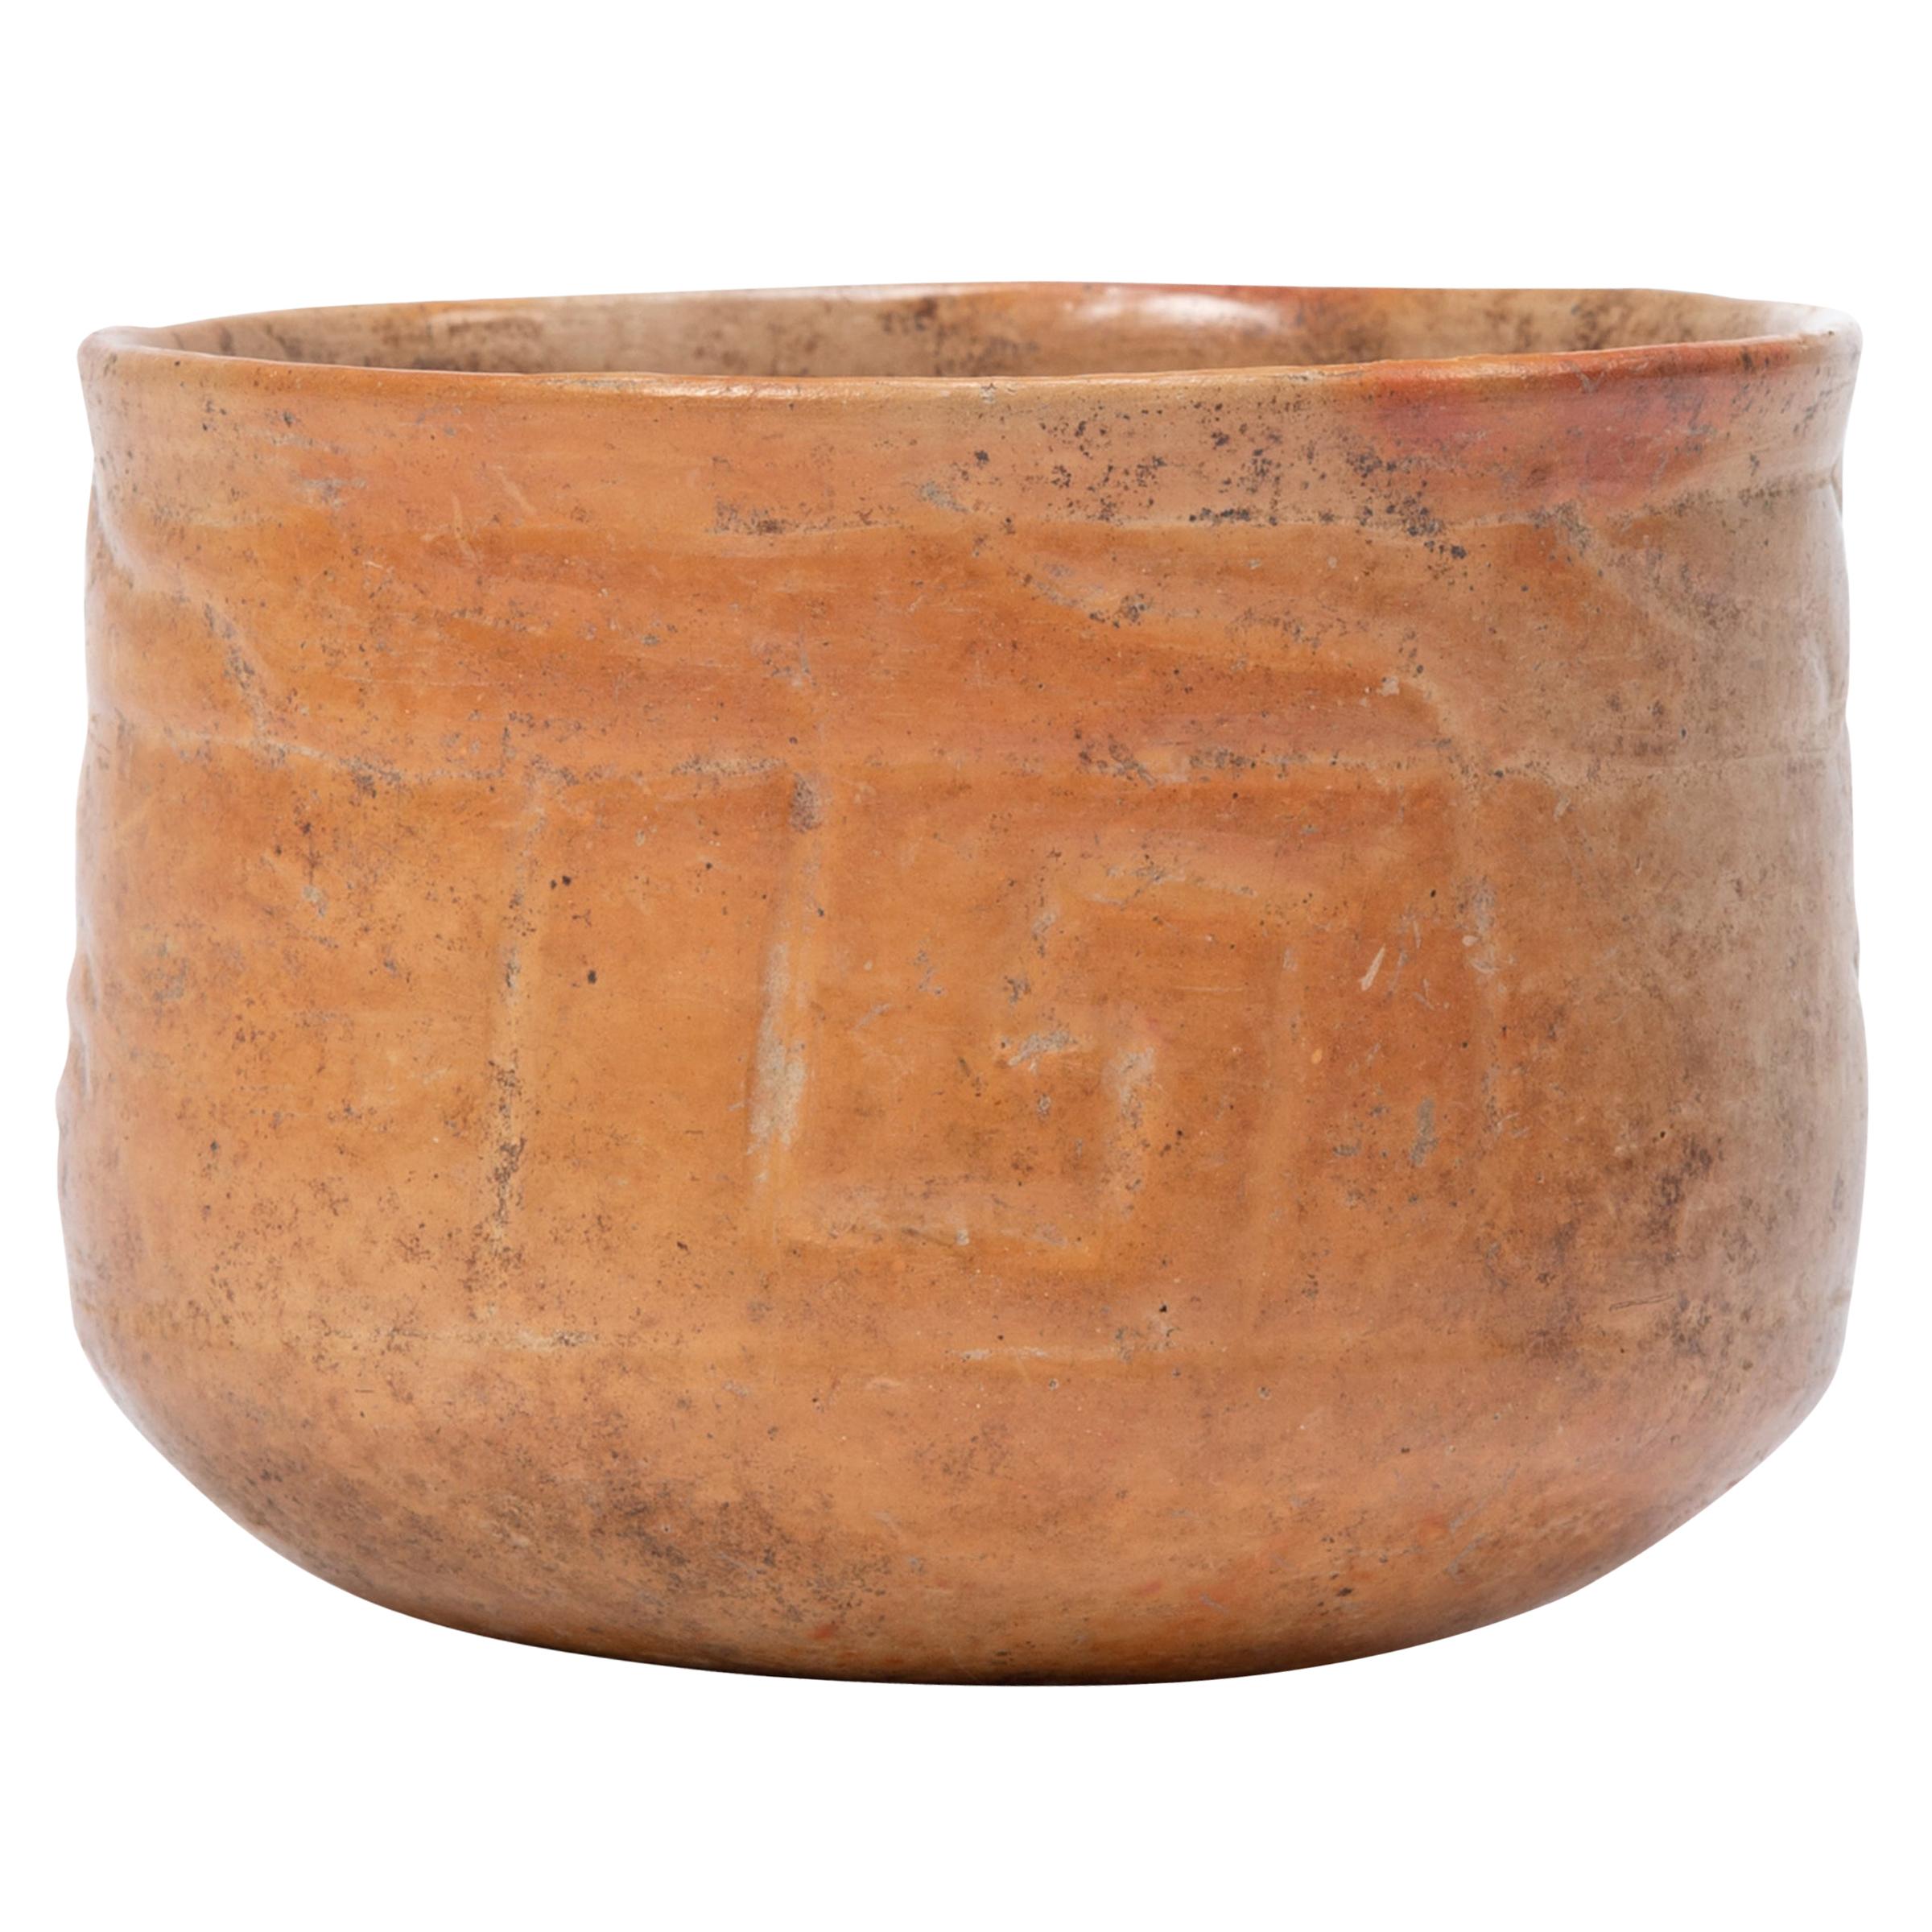 Maya Incised Orangeware Bowl